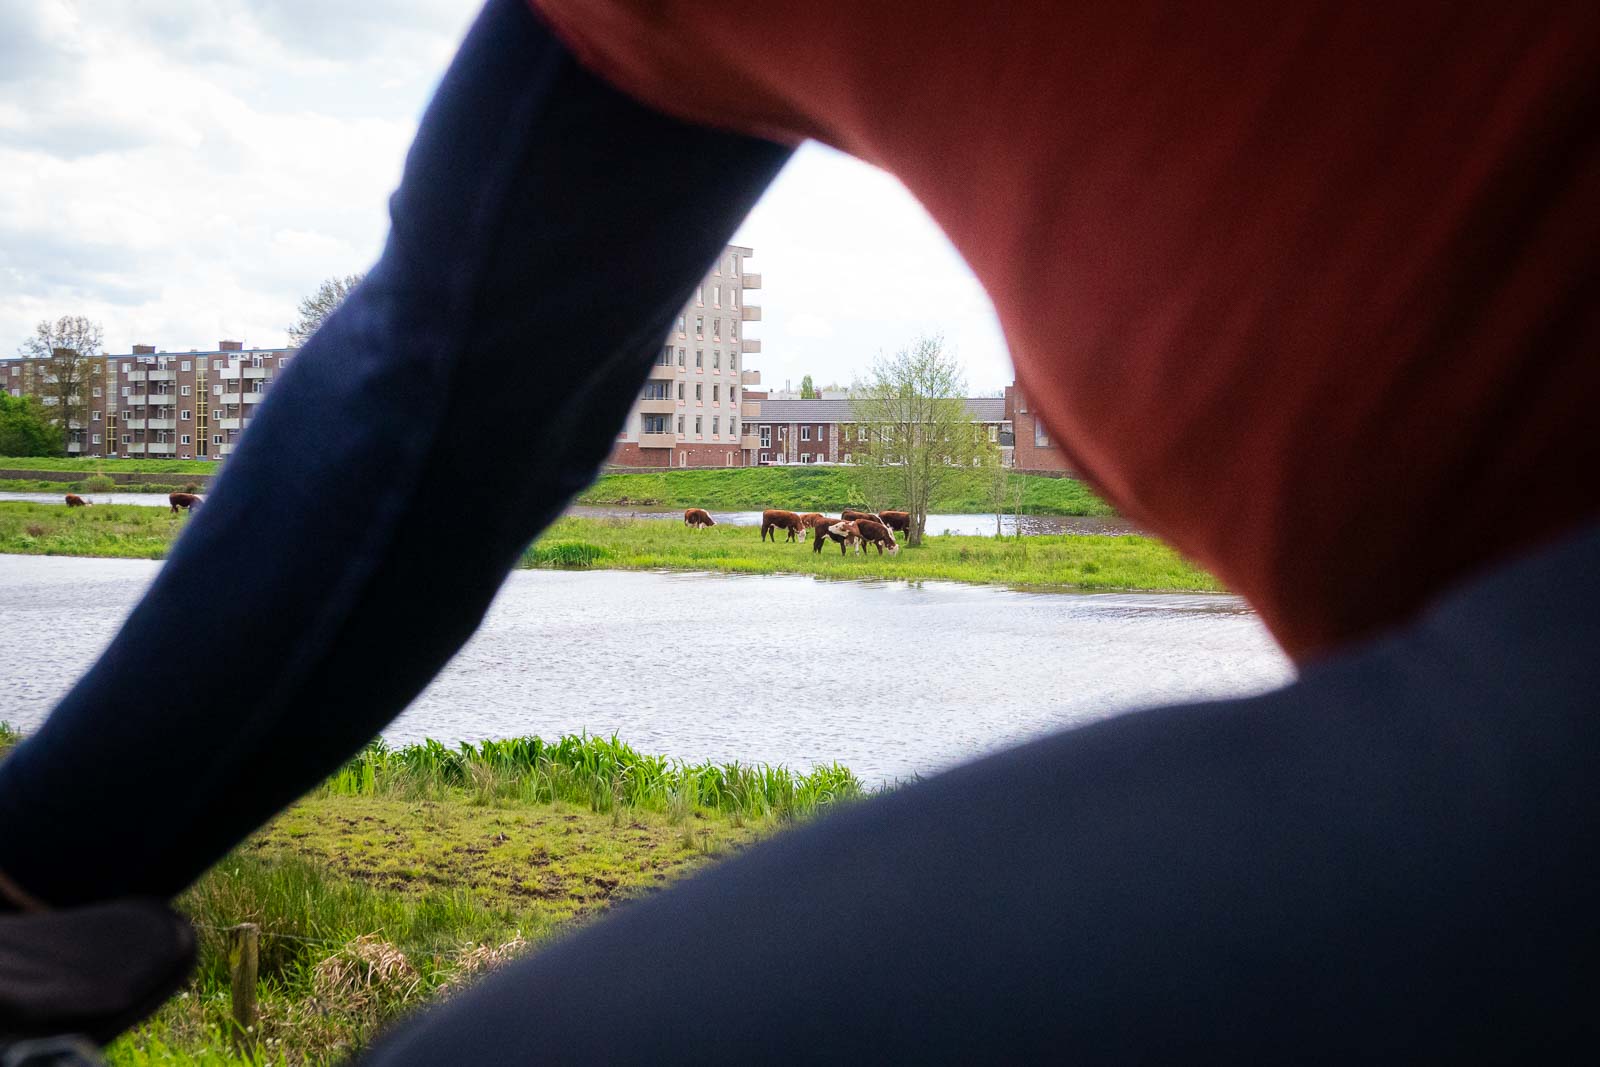 Durch einen Radfahrer hindurch sieht man Kühe die auf einer Insel vor einem städtischen Panorama grasen